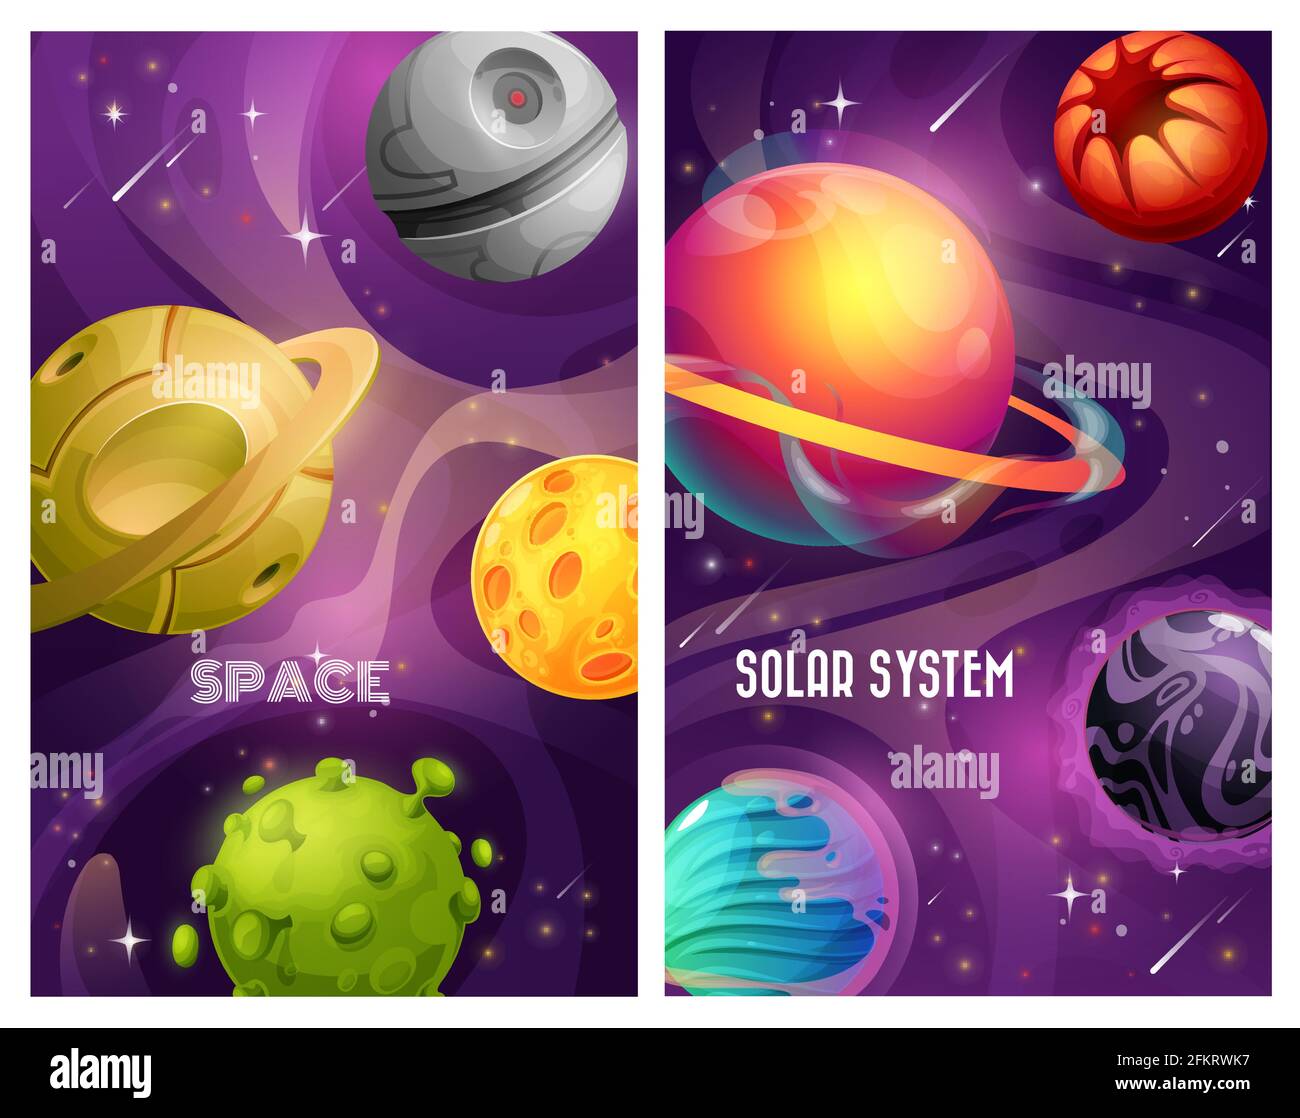 Weltraum-Planeten von außerirdischen Sonnensystem Cartoon-Vektor-Design. Galaxienuniversum Reise- und Astronomie-Banner mit fantasievollen bunten Planeten, Sternen und Kometen Stock Vektor